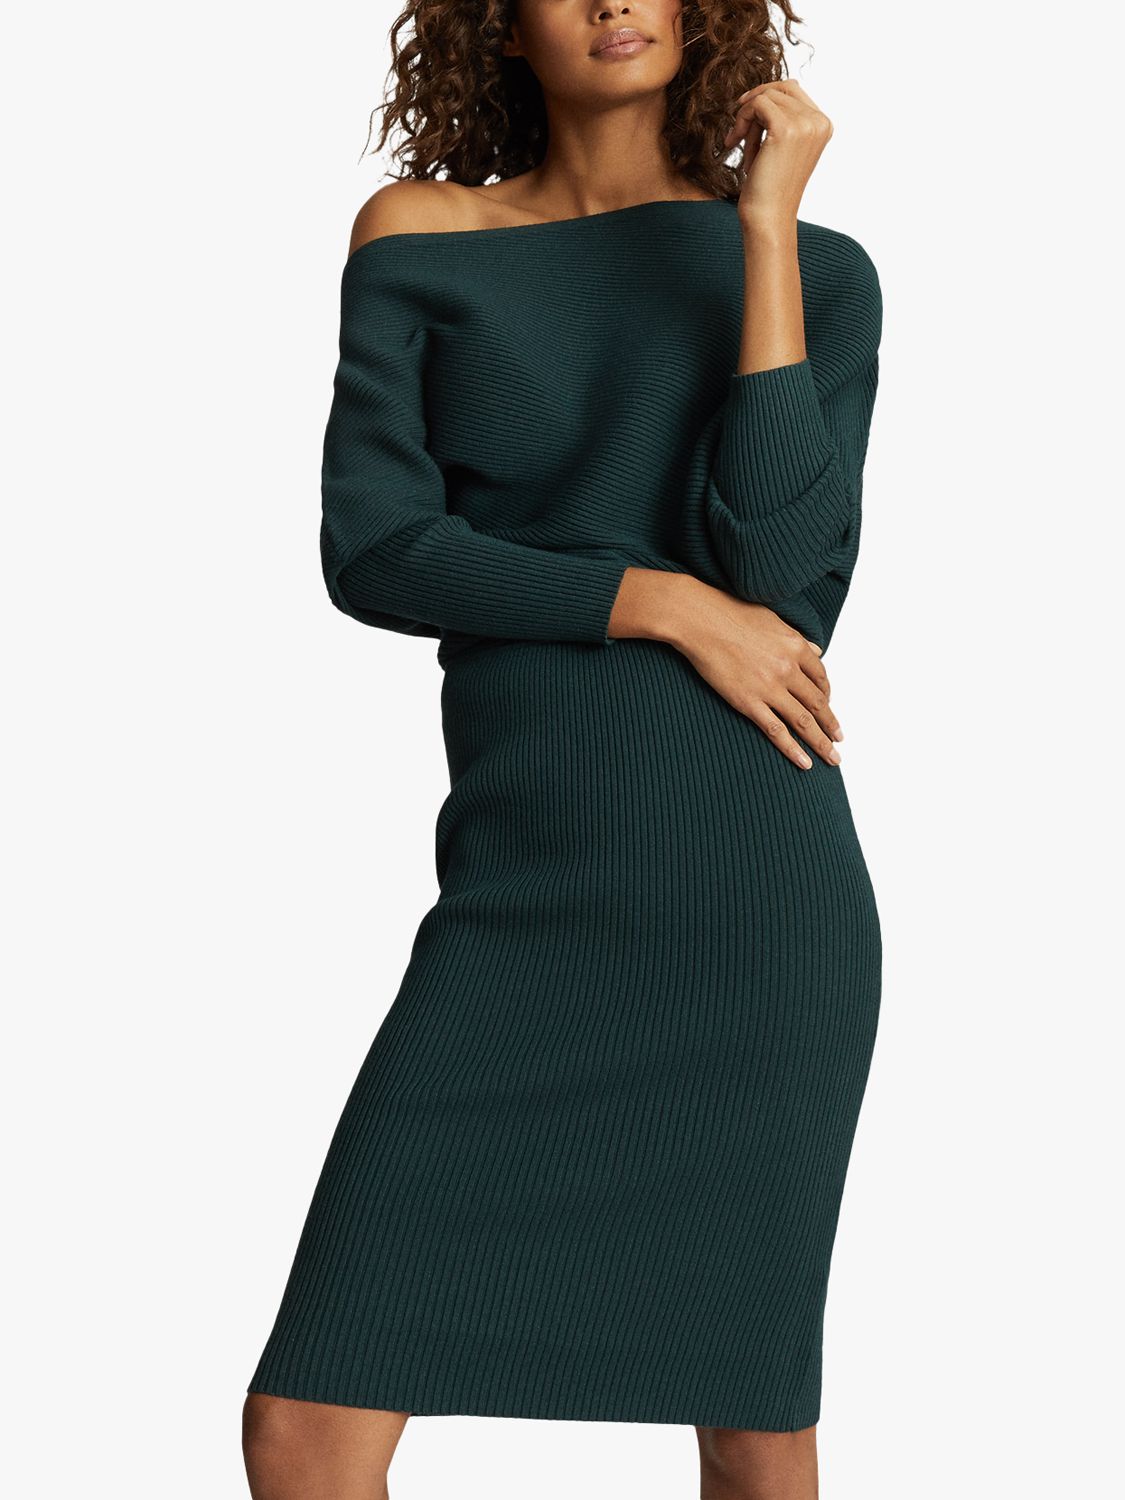 green full length dress